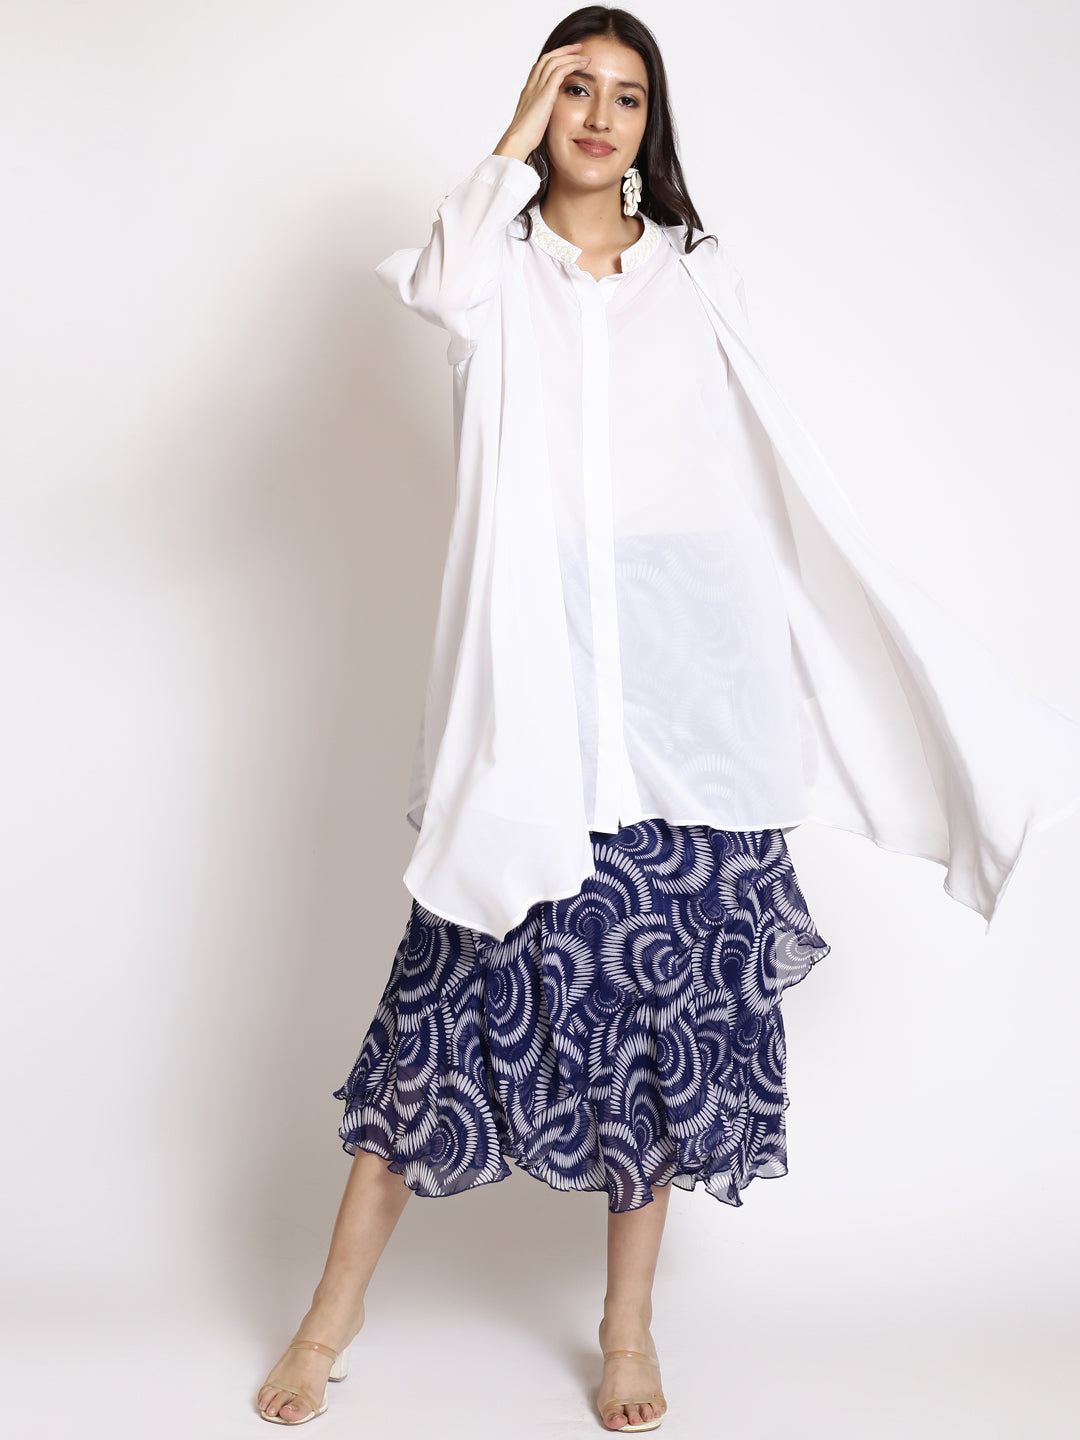 Geometric Printed Flared Midi Skirts